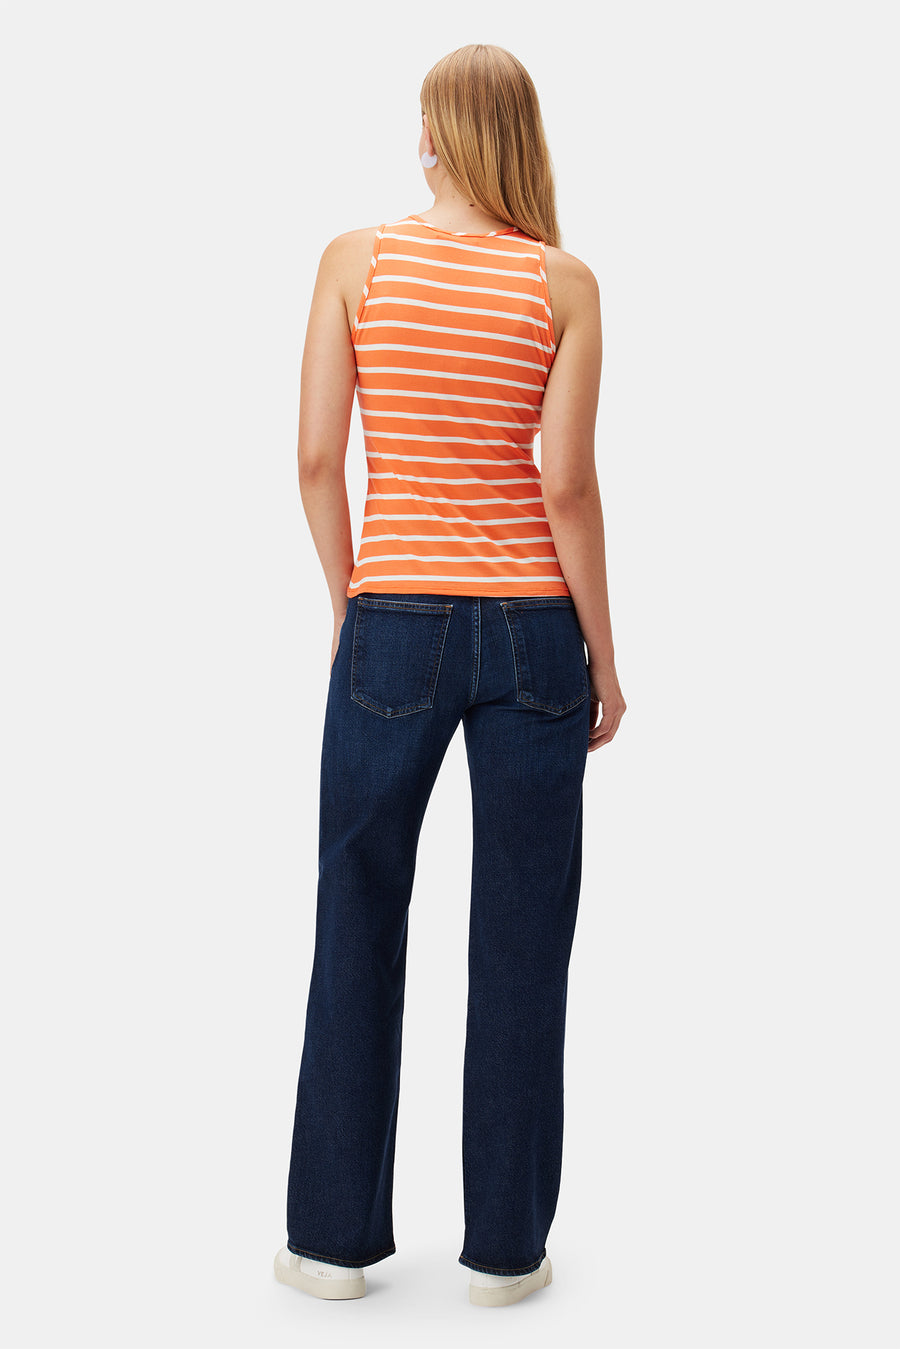 Jillian Modal Tank - Tangerine Stripe